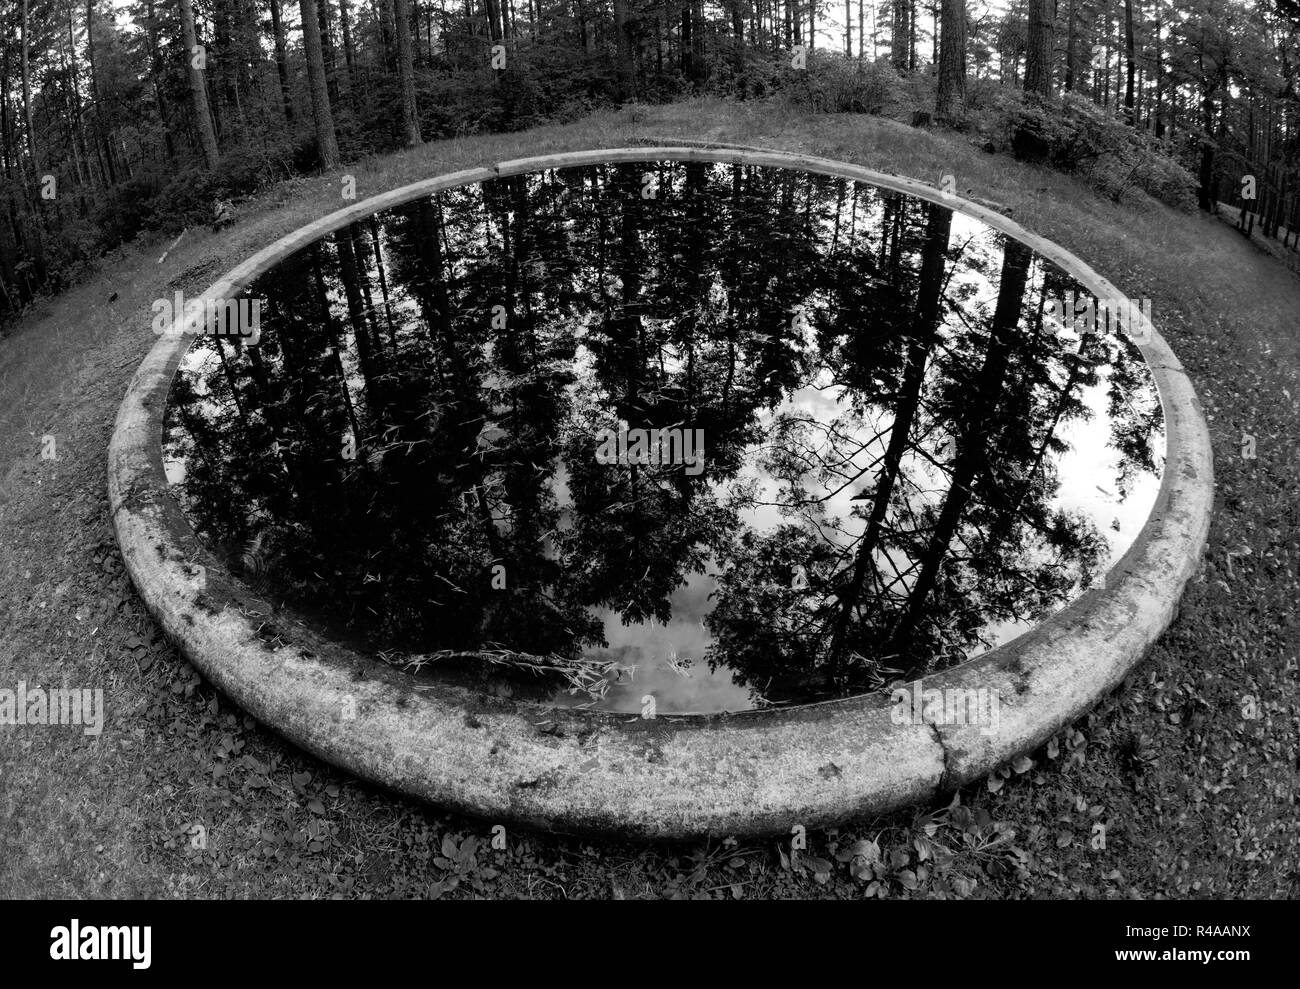 Belle réflexion magique des arbres dans la forêt intérieure. La photographie en noir et blanc, objectif fisheye. Banque D'Images